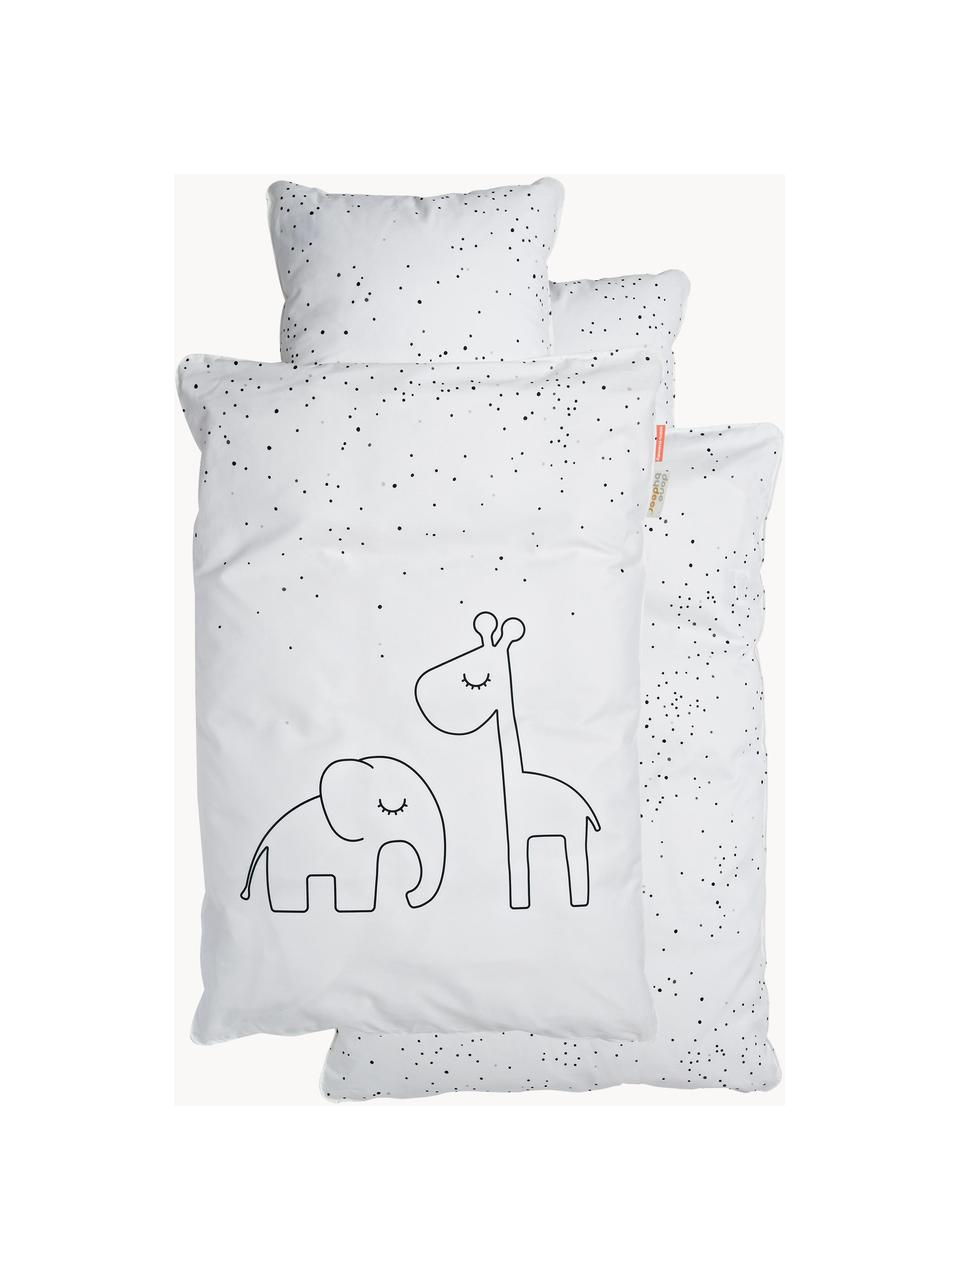 Biancheria da letto Dreamy Dots, 100% cotone, certificato Oeko-Tex, Bianco, 100 x 140 cm + 1 cuscino 40 x 60 cm